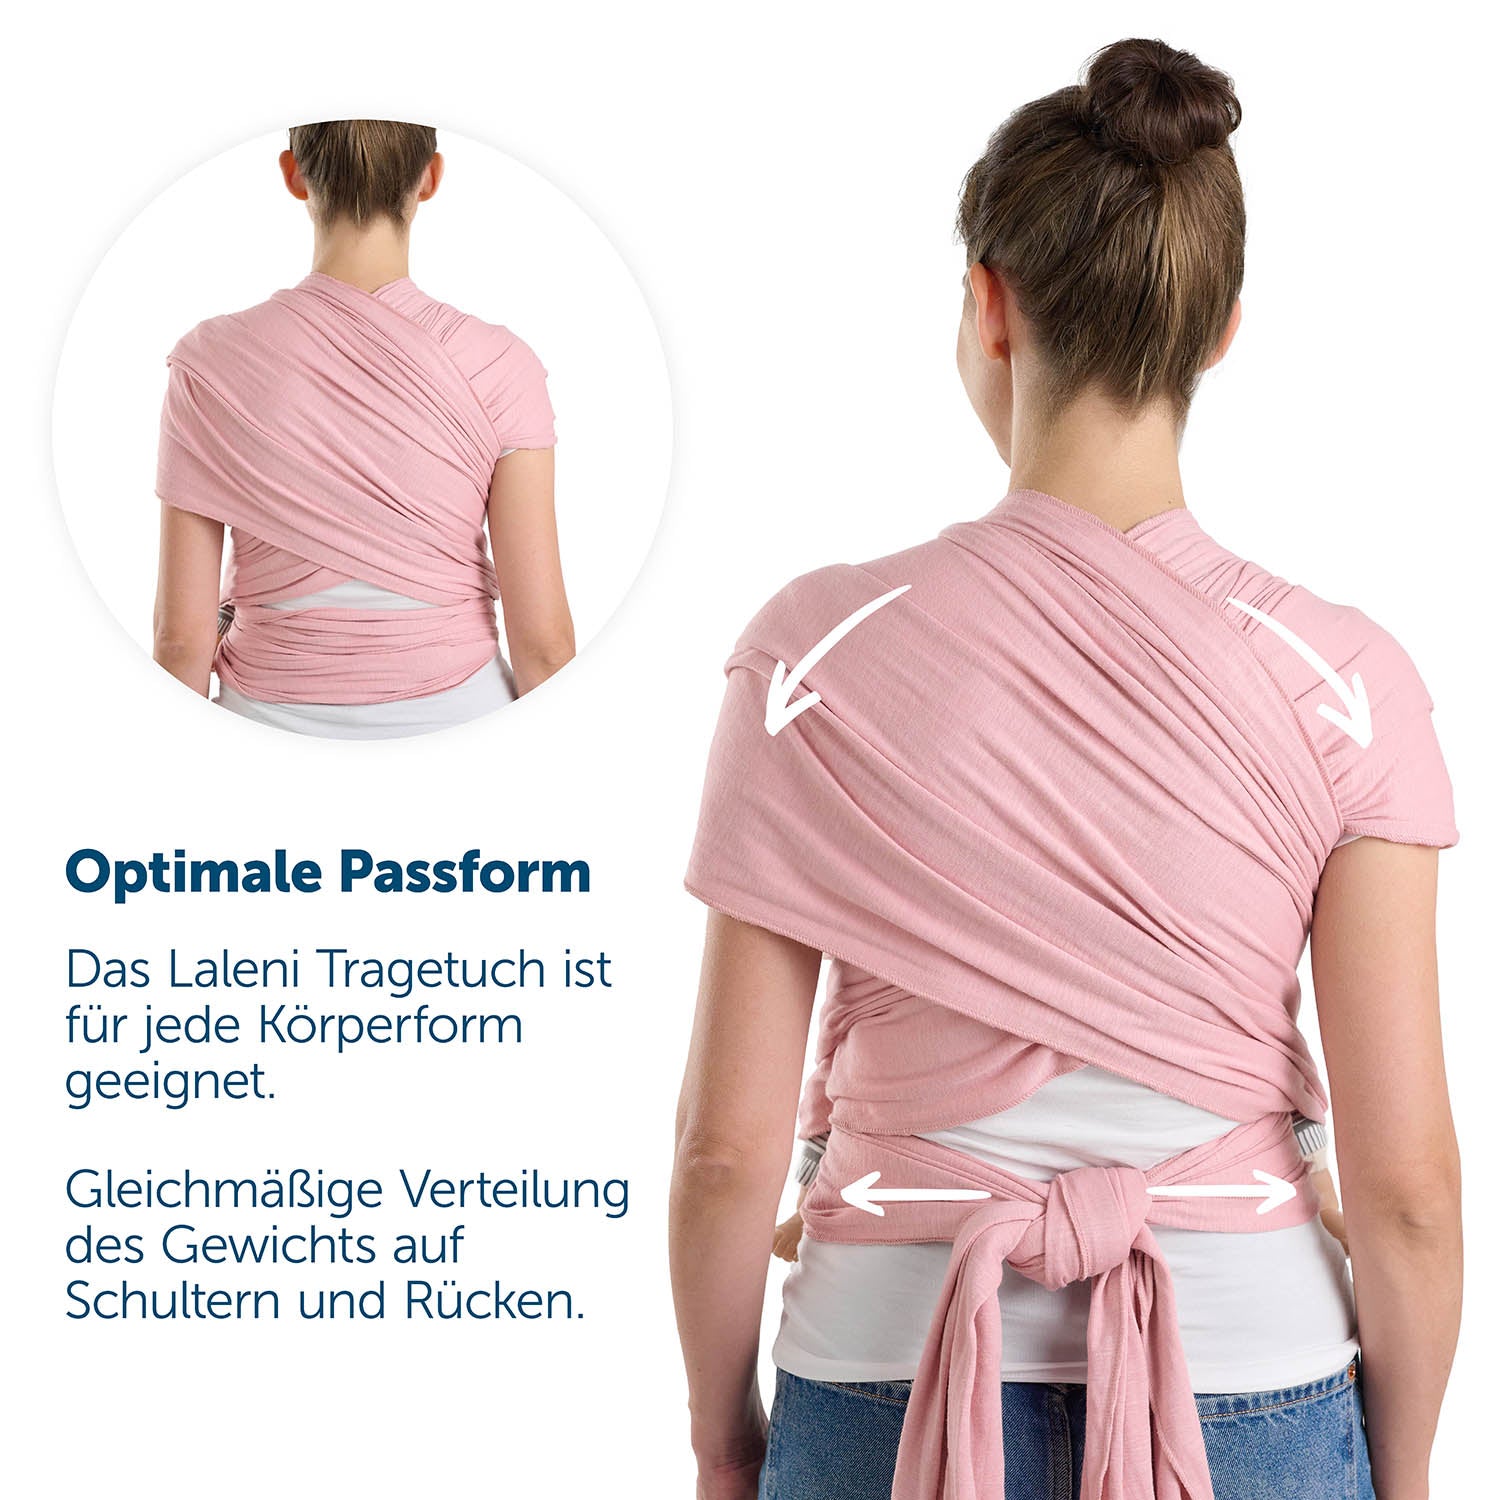 Rückenansicht einer Frau in grüner Tragetuch mit Hinweisen zur optimalen Passform und Gewichtsverteilung.